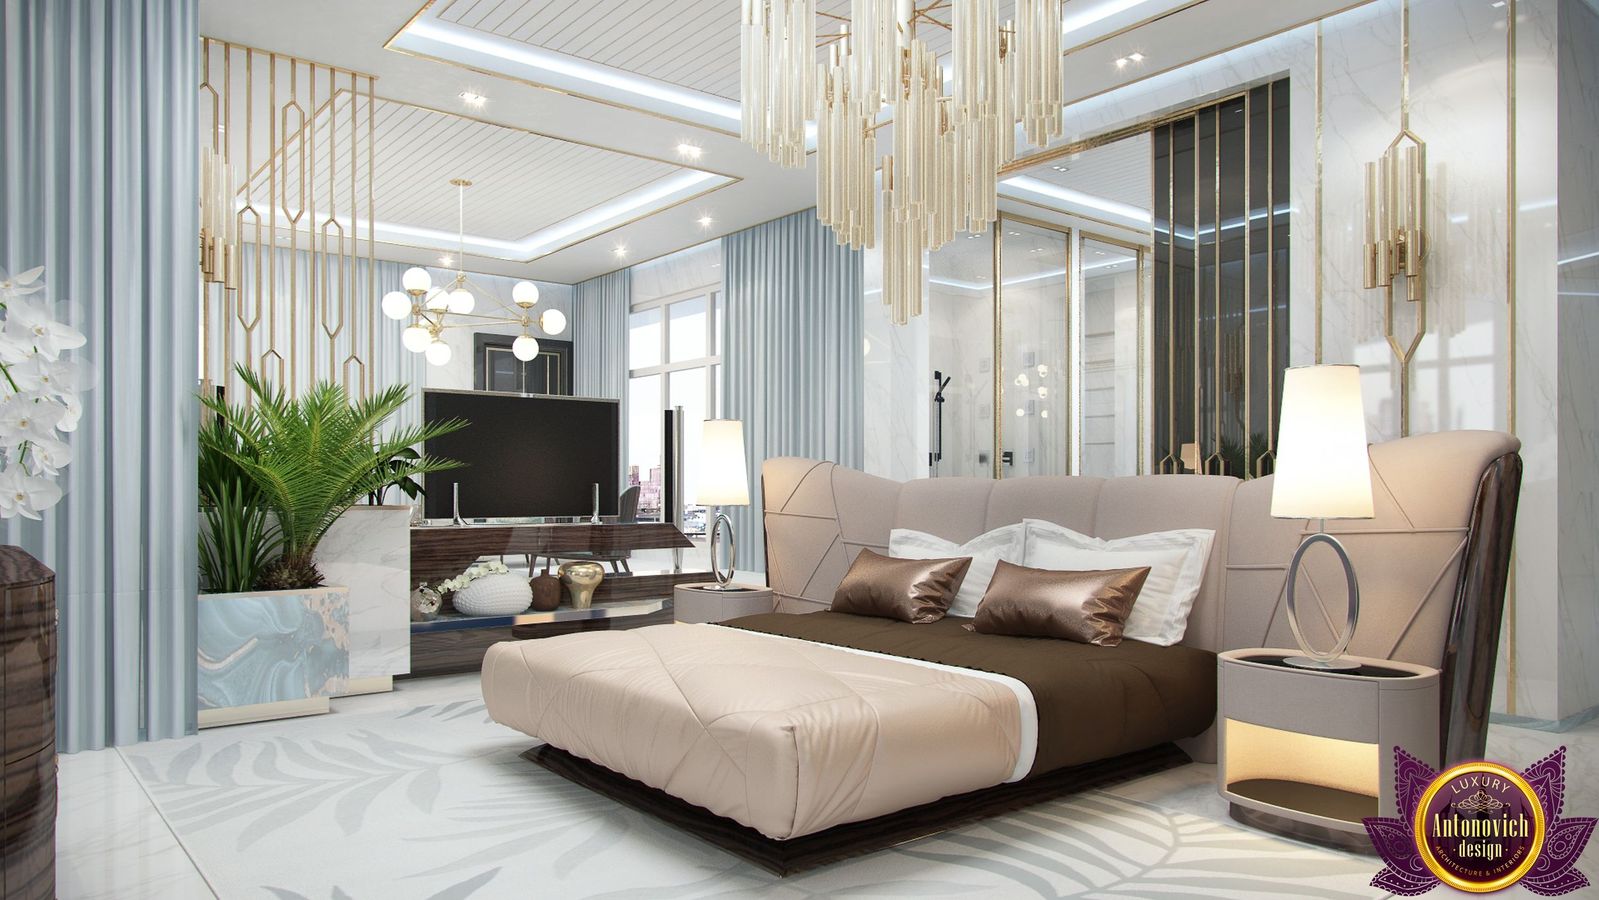 Idea 1874273 Modern Bedroom Designs Of Katrina Antonovich